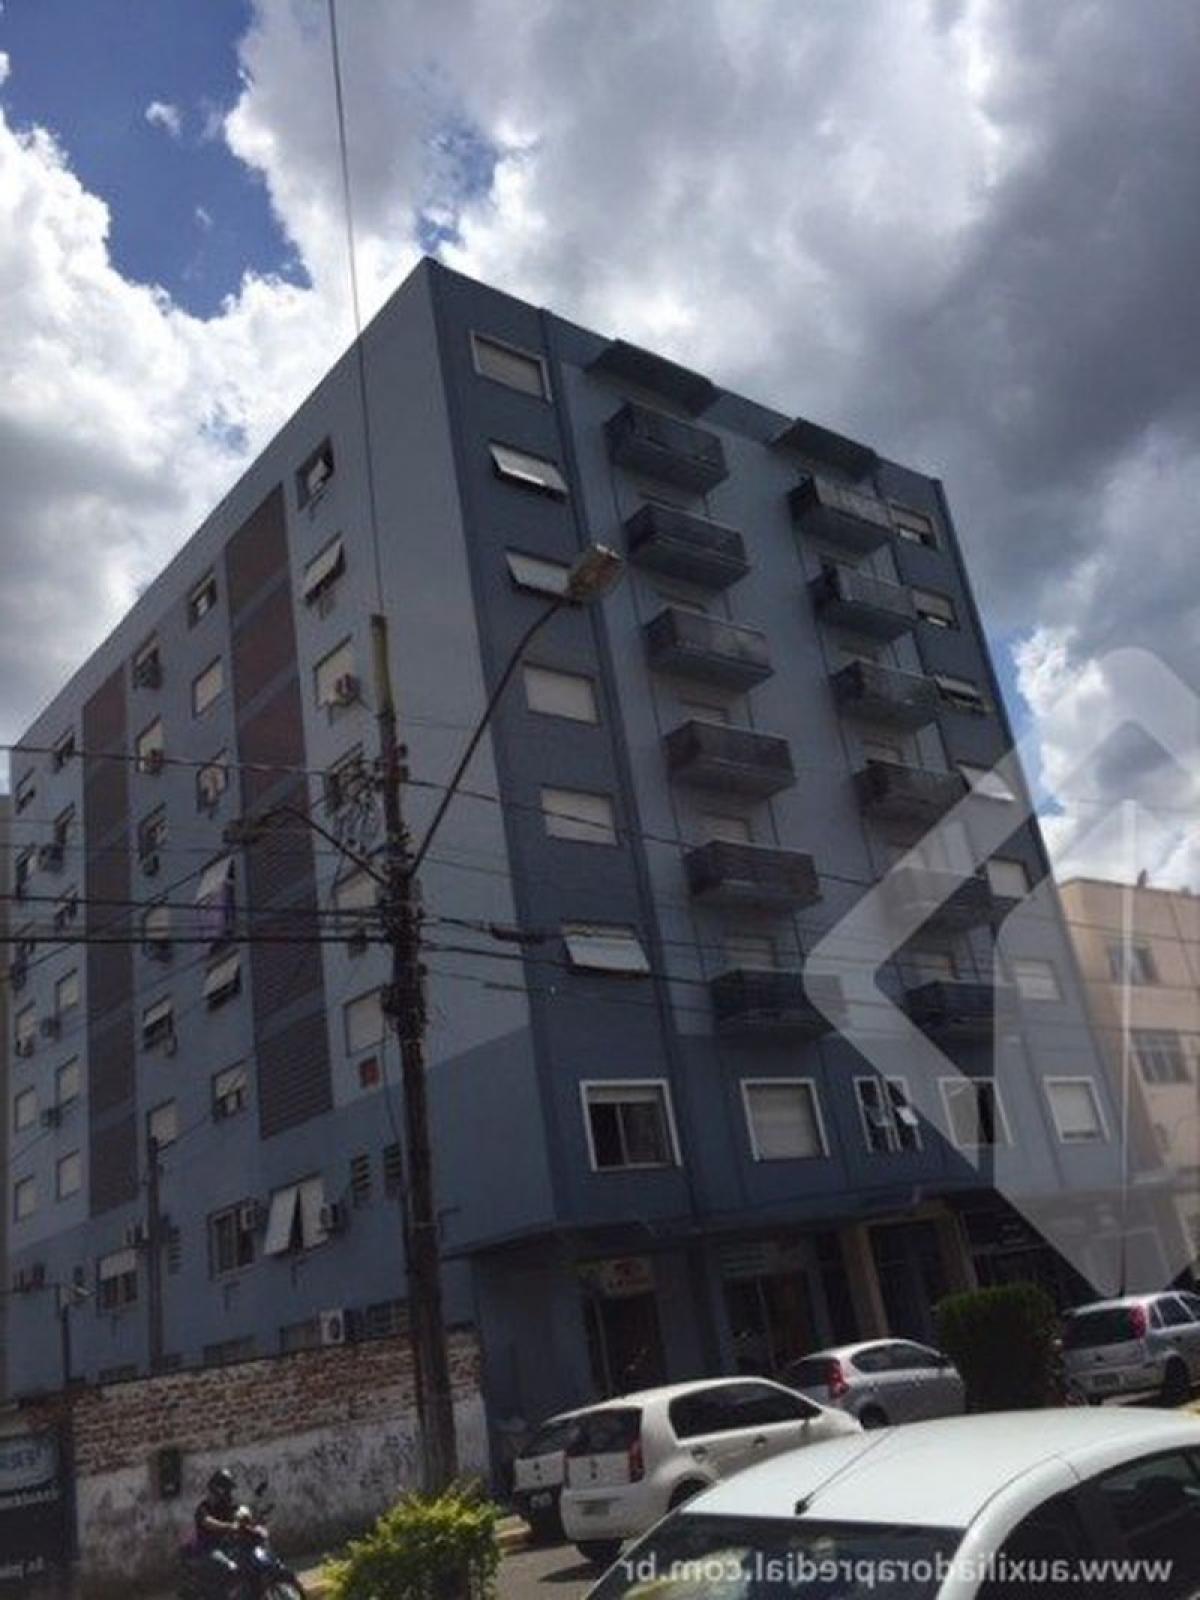 Picture of Apartment For Sale in Campo Bom, Rio Grande do Sul, Brazil